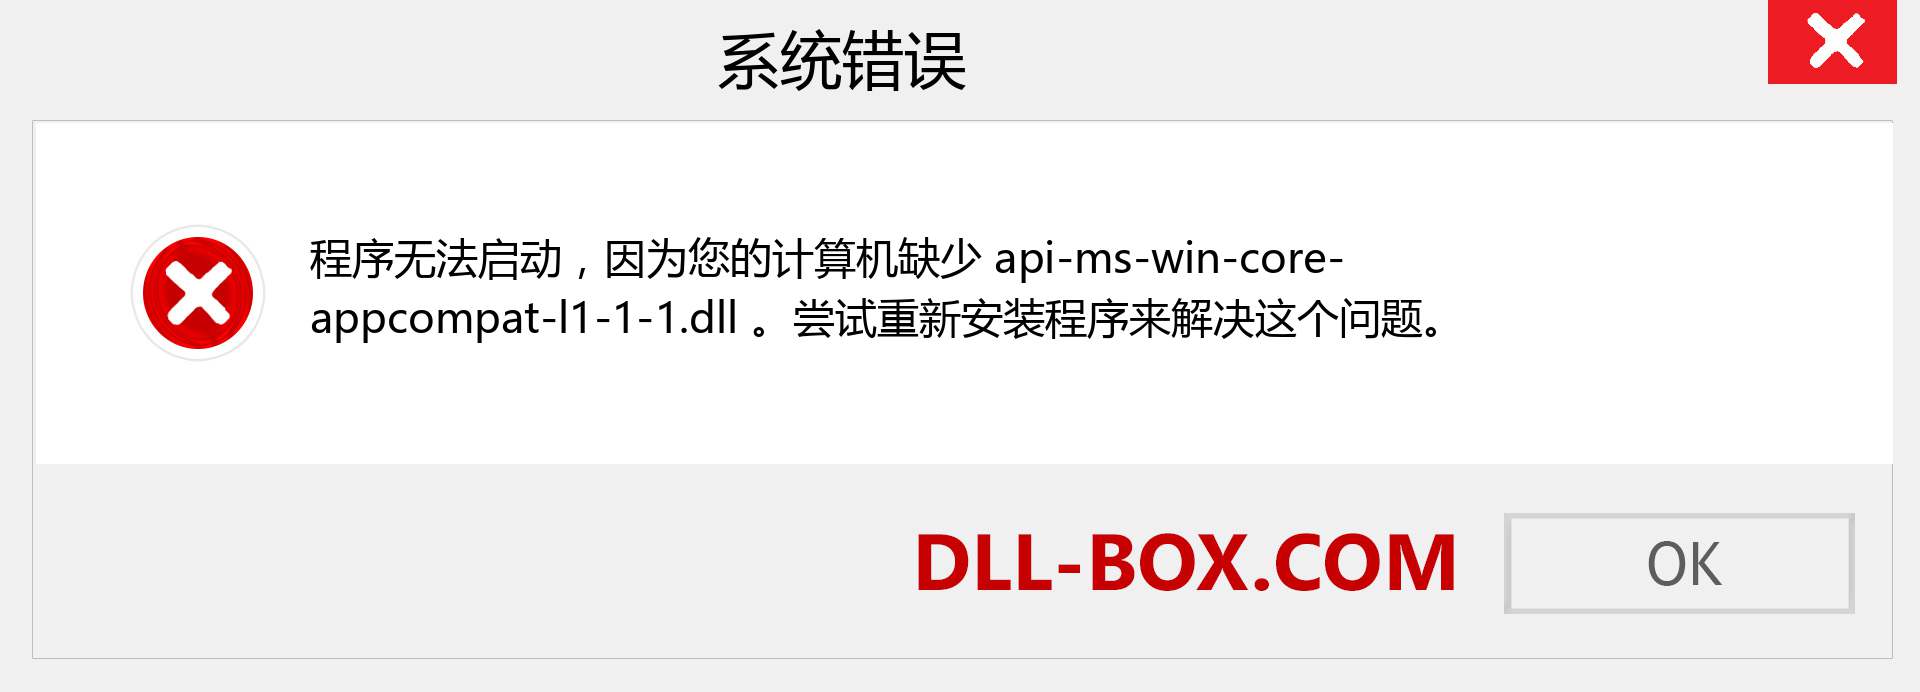 api-ms-win-core-appcompat-l1-1-1.dll 文件丢失？。 适用于 Windows 7、8、10 的下载 - 修复 Windows、照片、图像上的 api-ms-win-core-appcompat-l1-1-1 dll 丢失错误